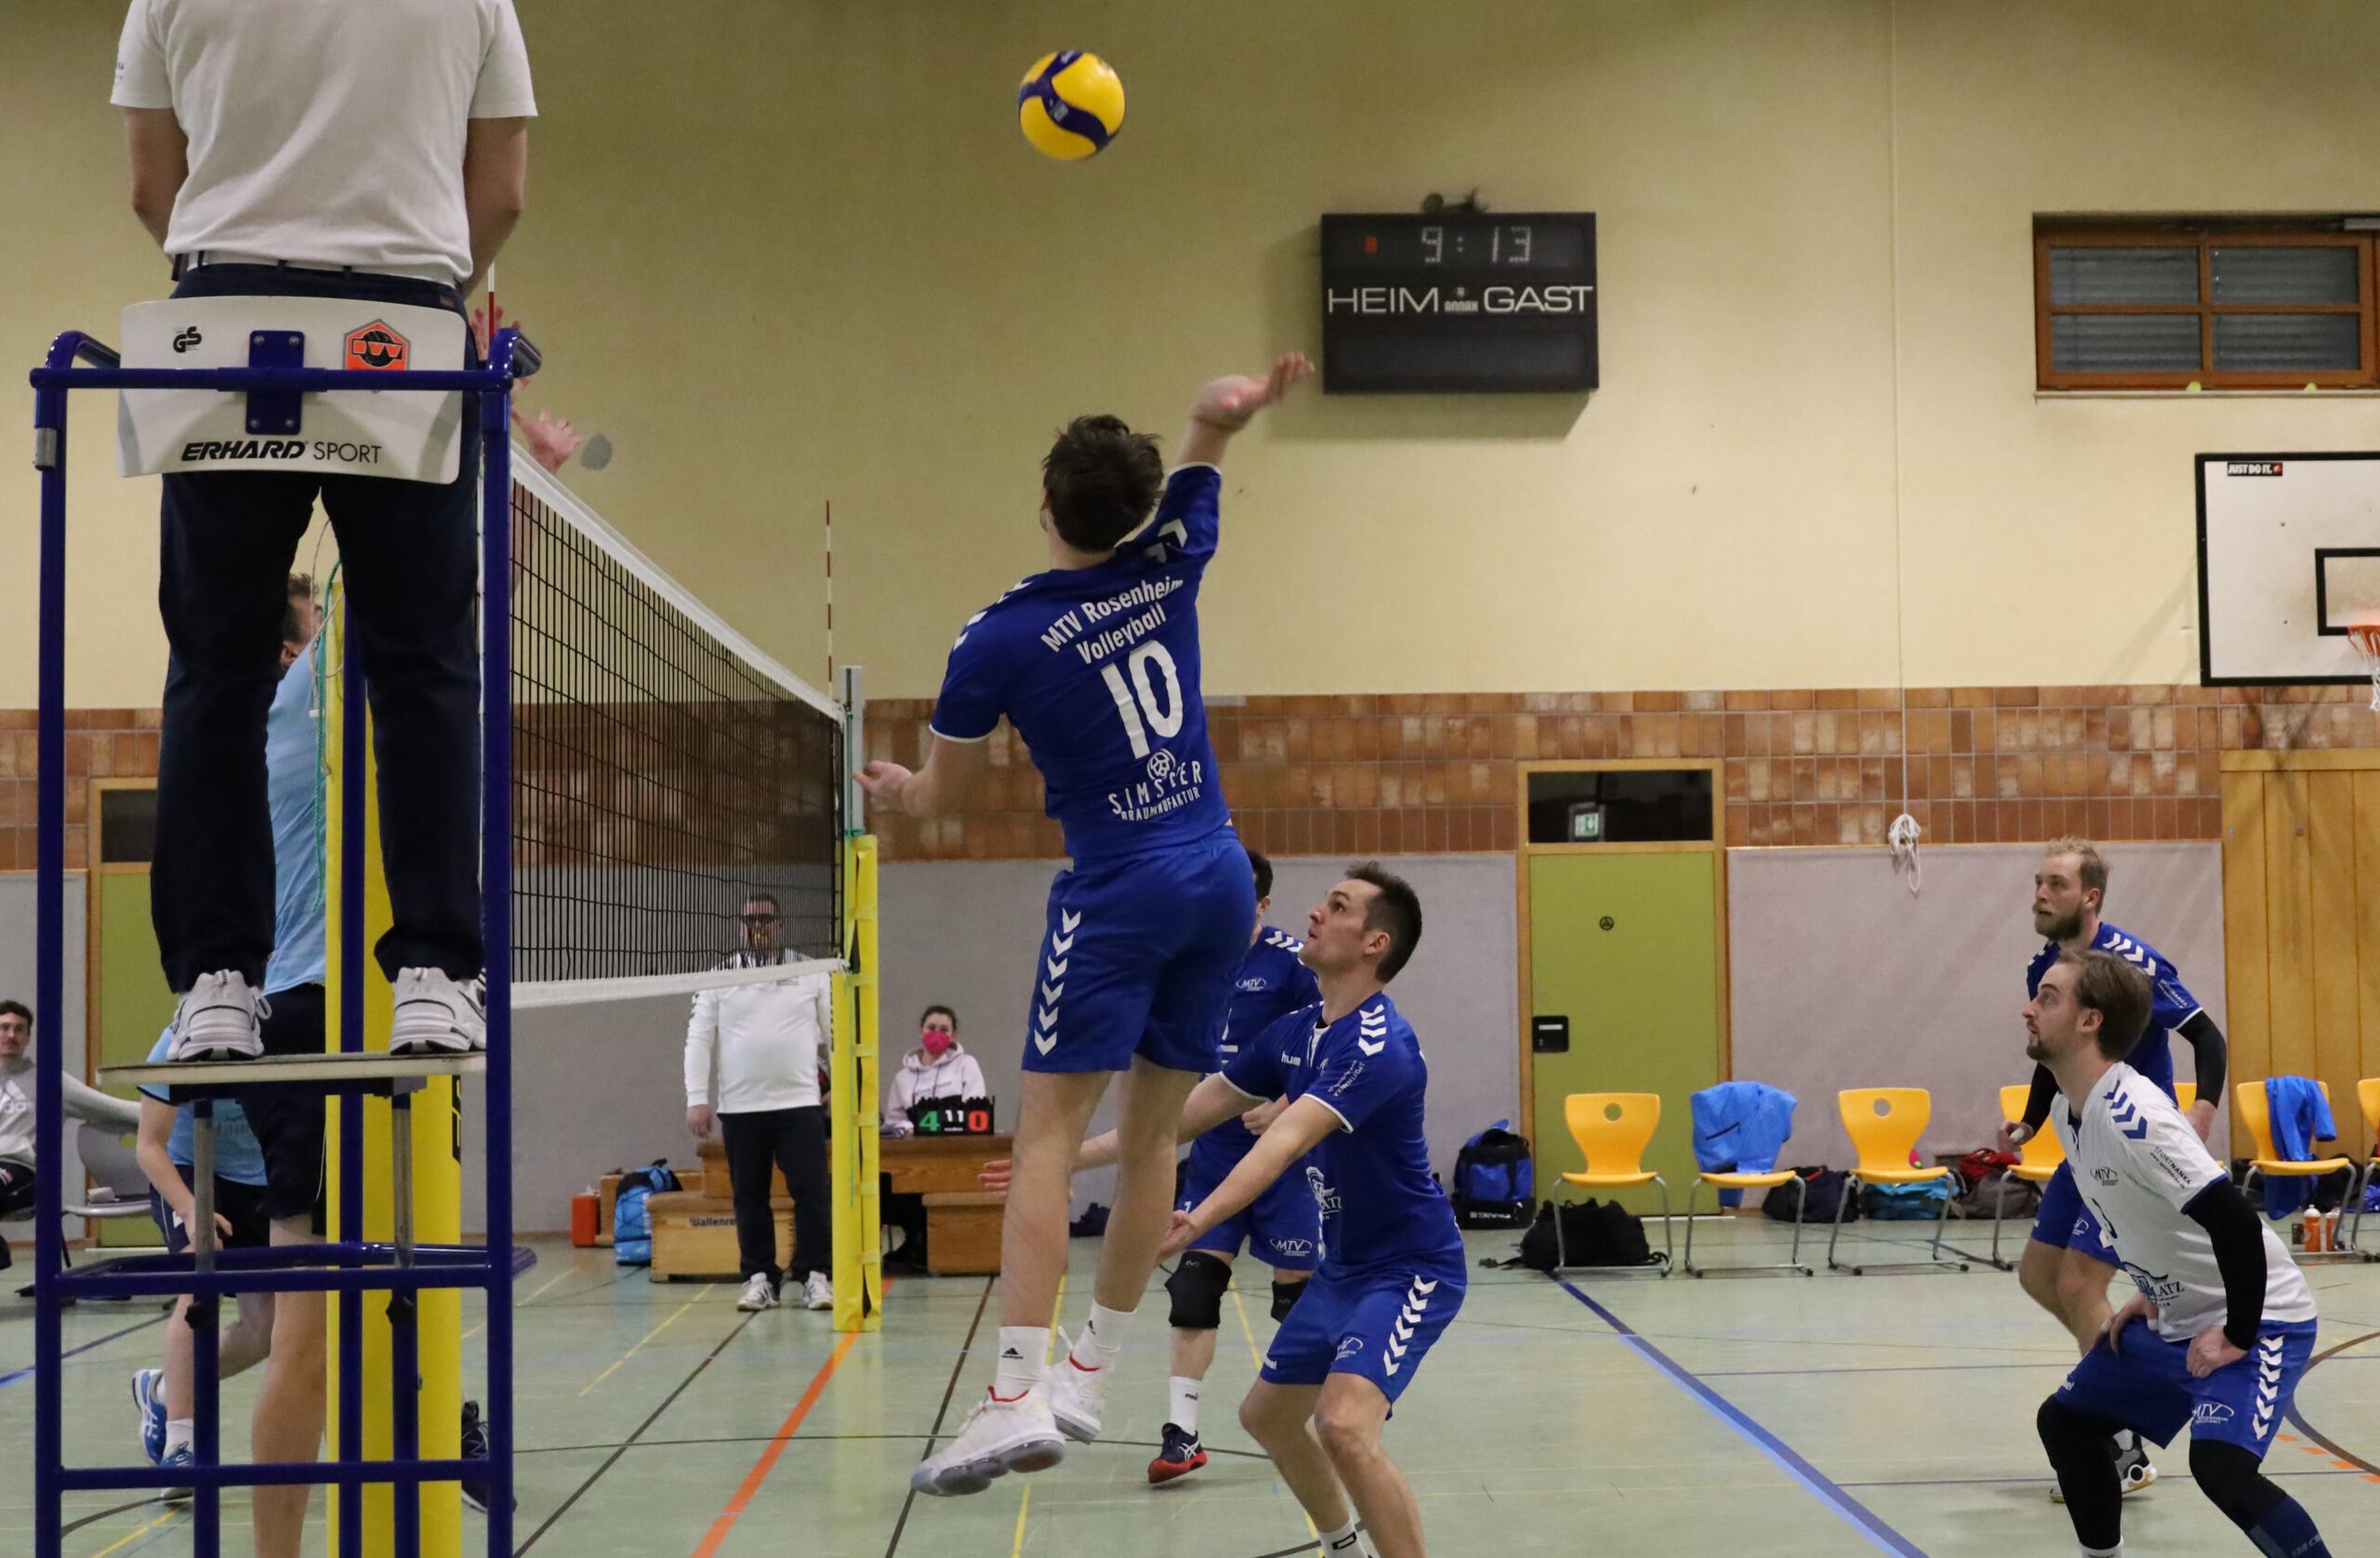 https://www.volleyball-rosenheim.de/wp-content/uploads/2022/02/Herren1_Volleyball_Rosenheim_Spieltag_Dachau_220213-scaled-e1644924688721.jpg